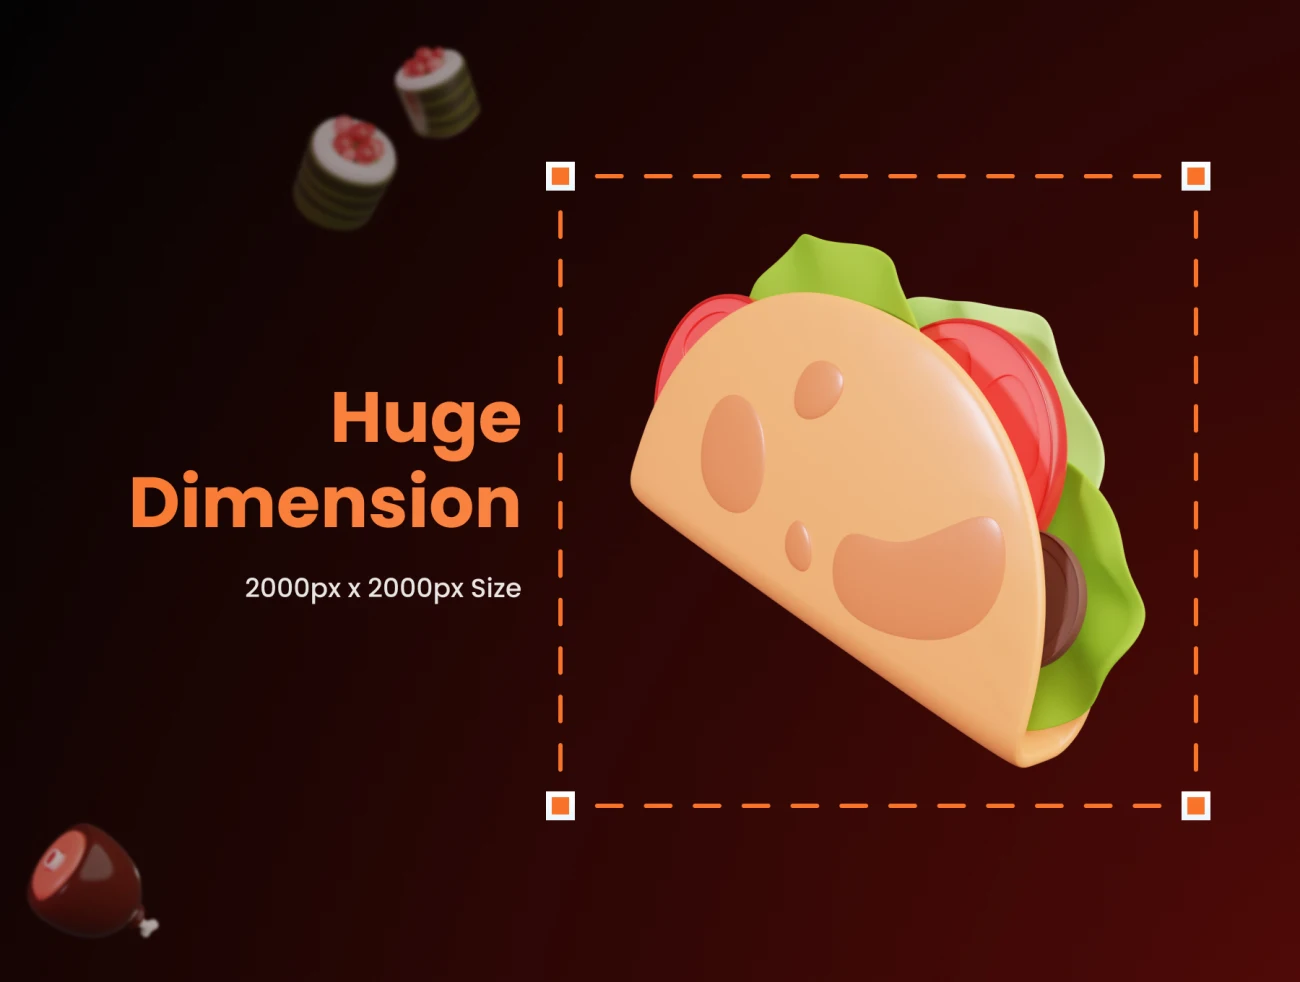 26款3D食品立体图标模型素材 Food Supplies 3D Icons .blender .psd-3D/图标-到位啦UI